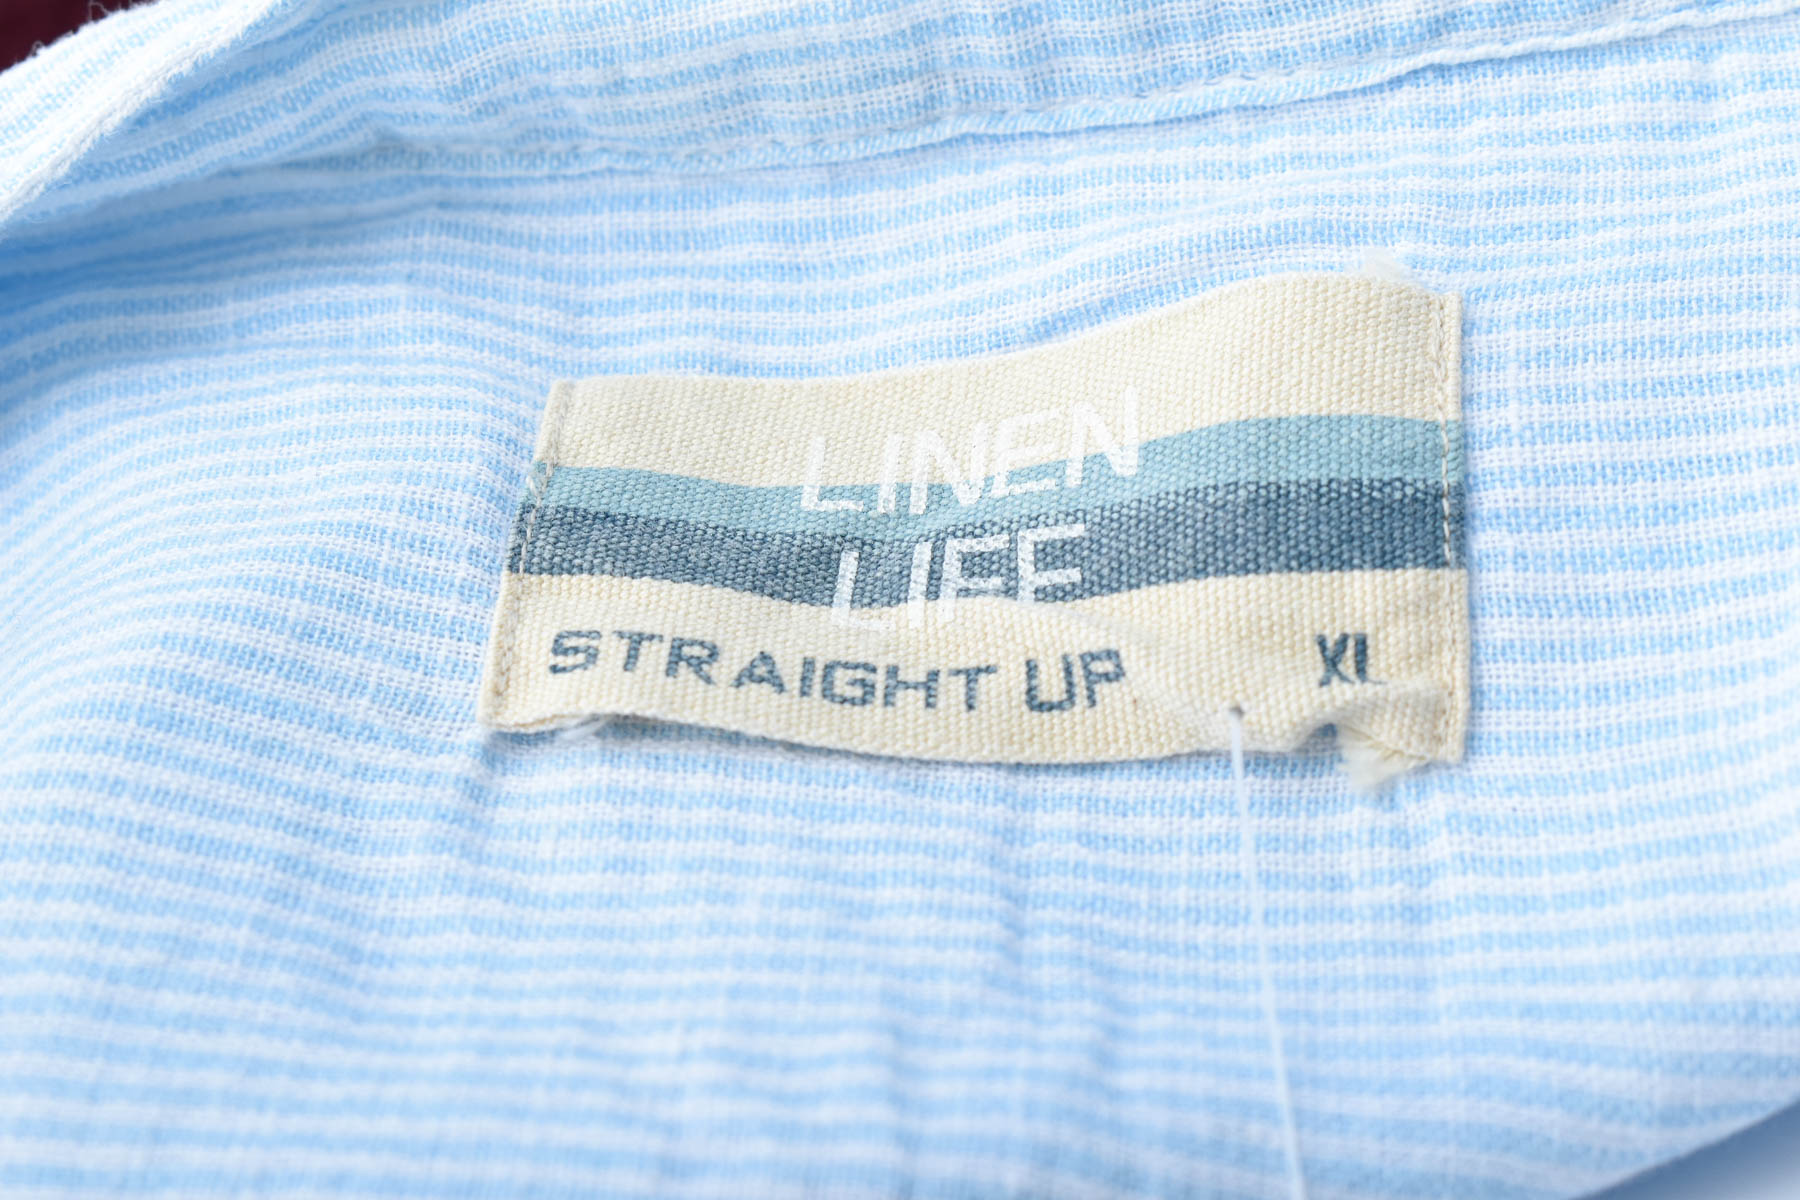 Men's shirt - Straight Up - 2